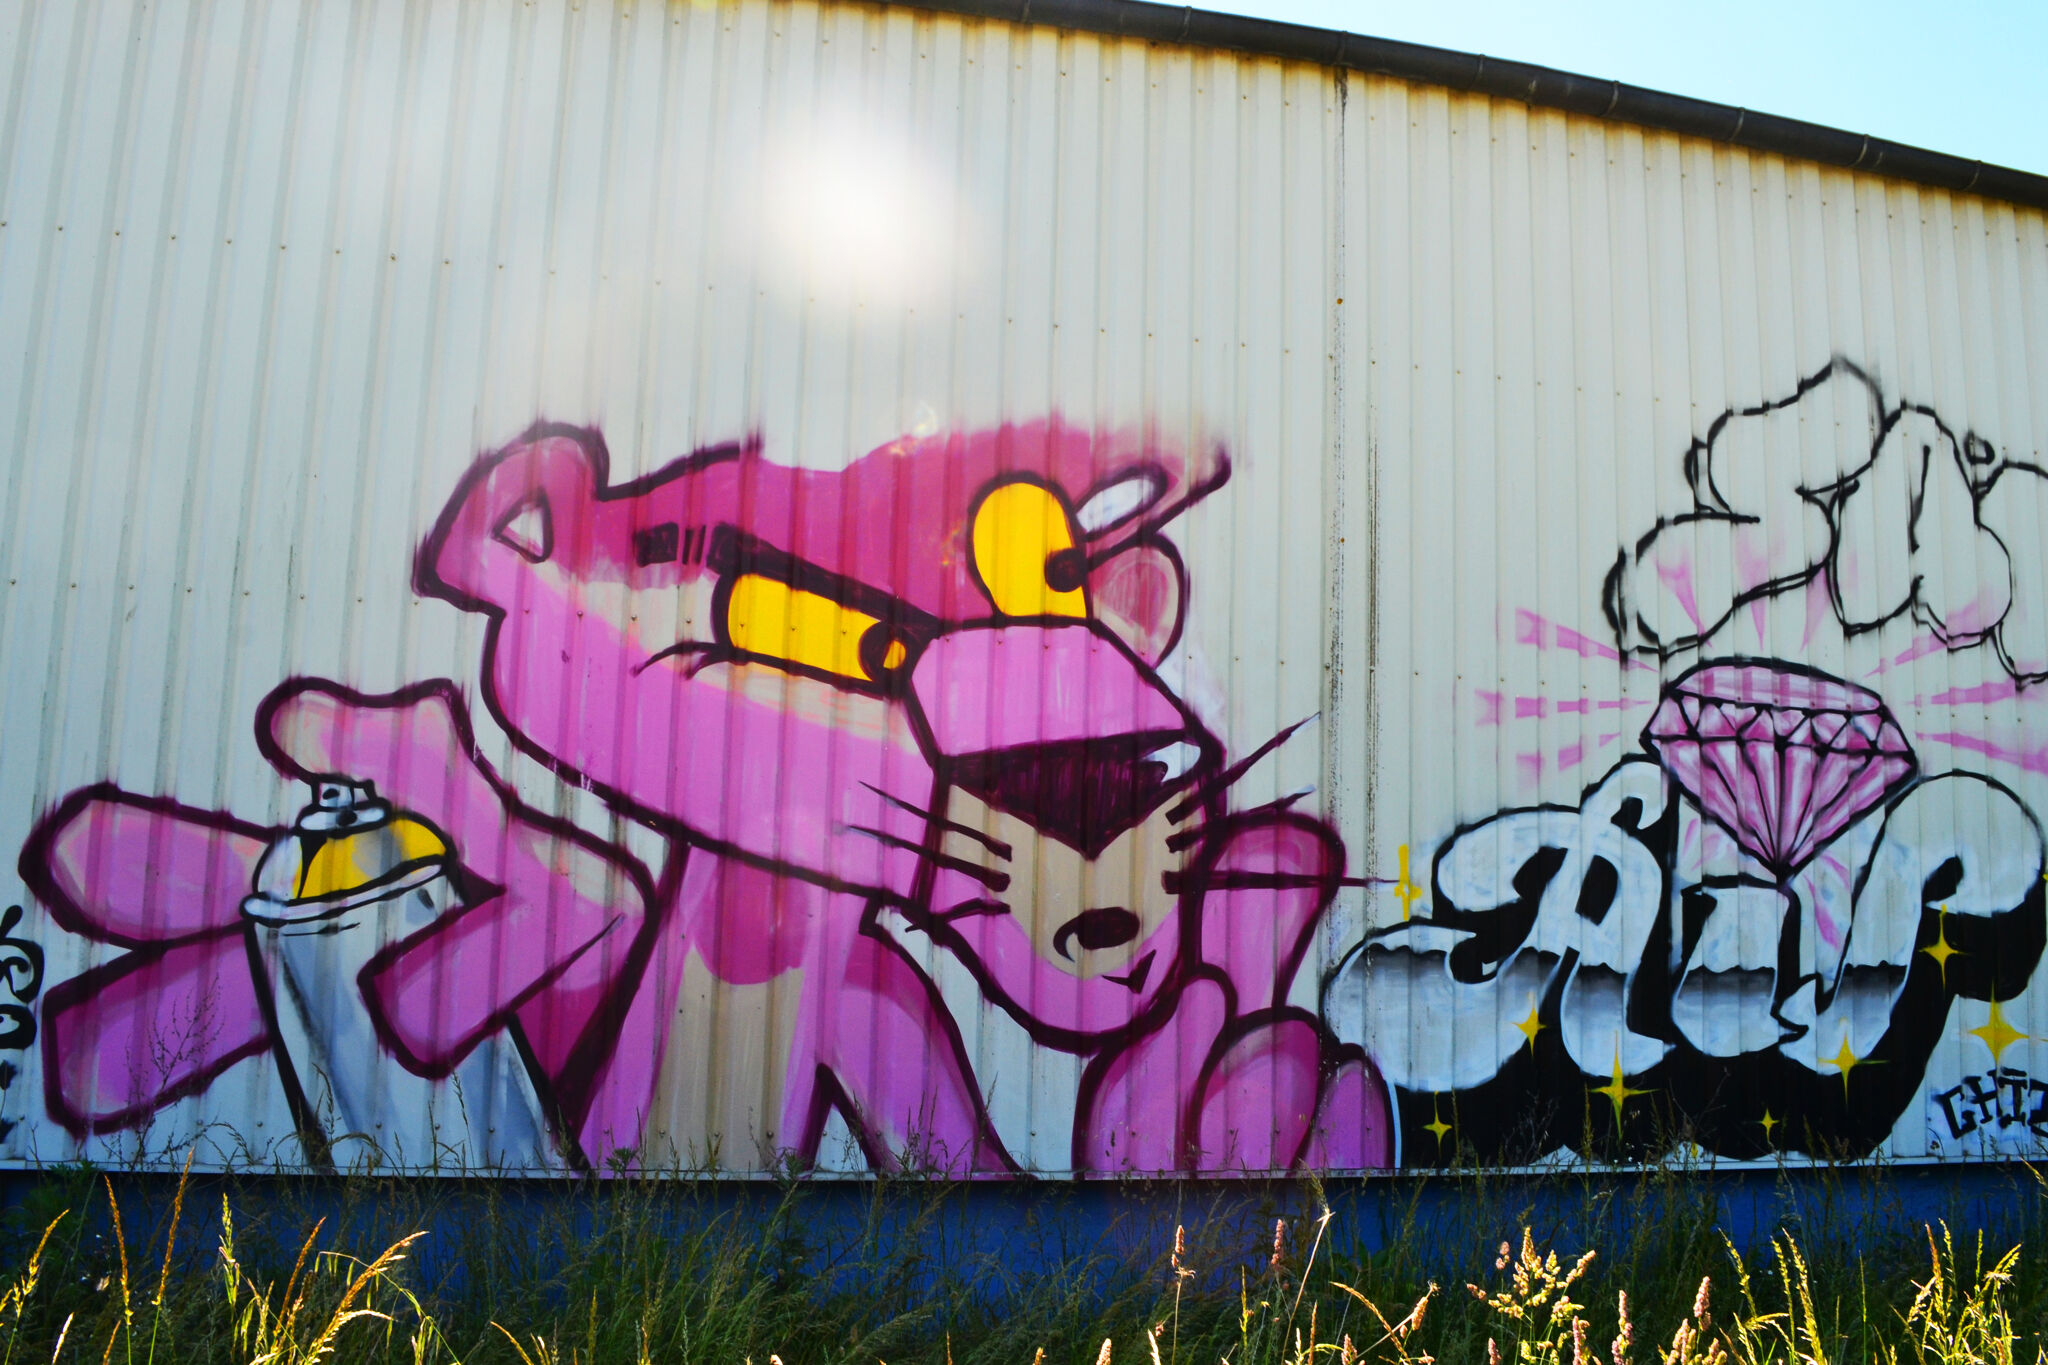 Despe&mdash;The Pink Panther